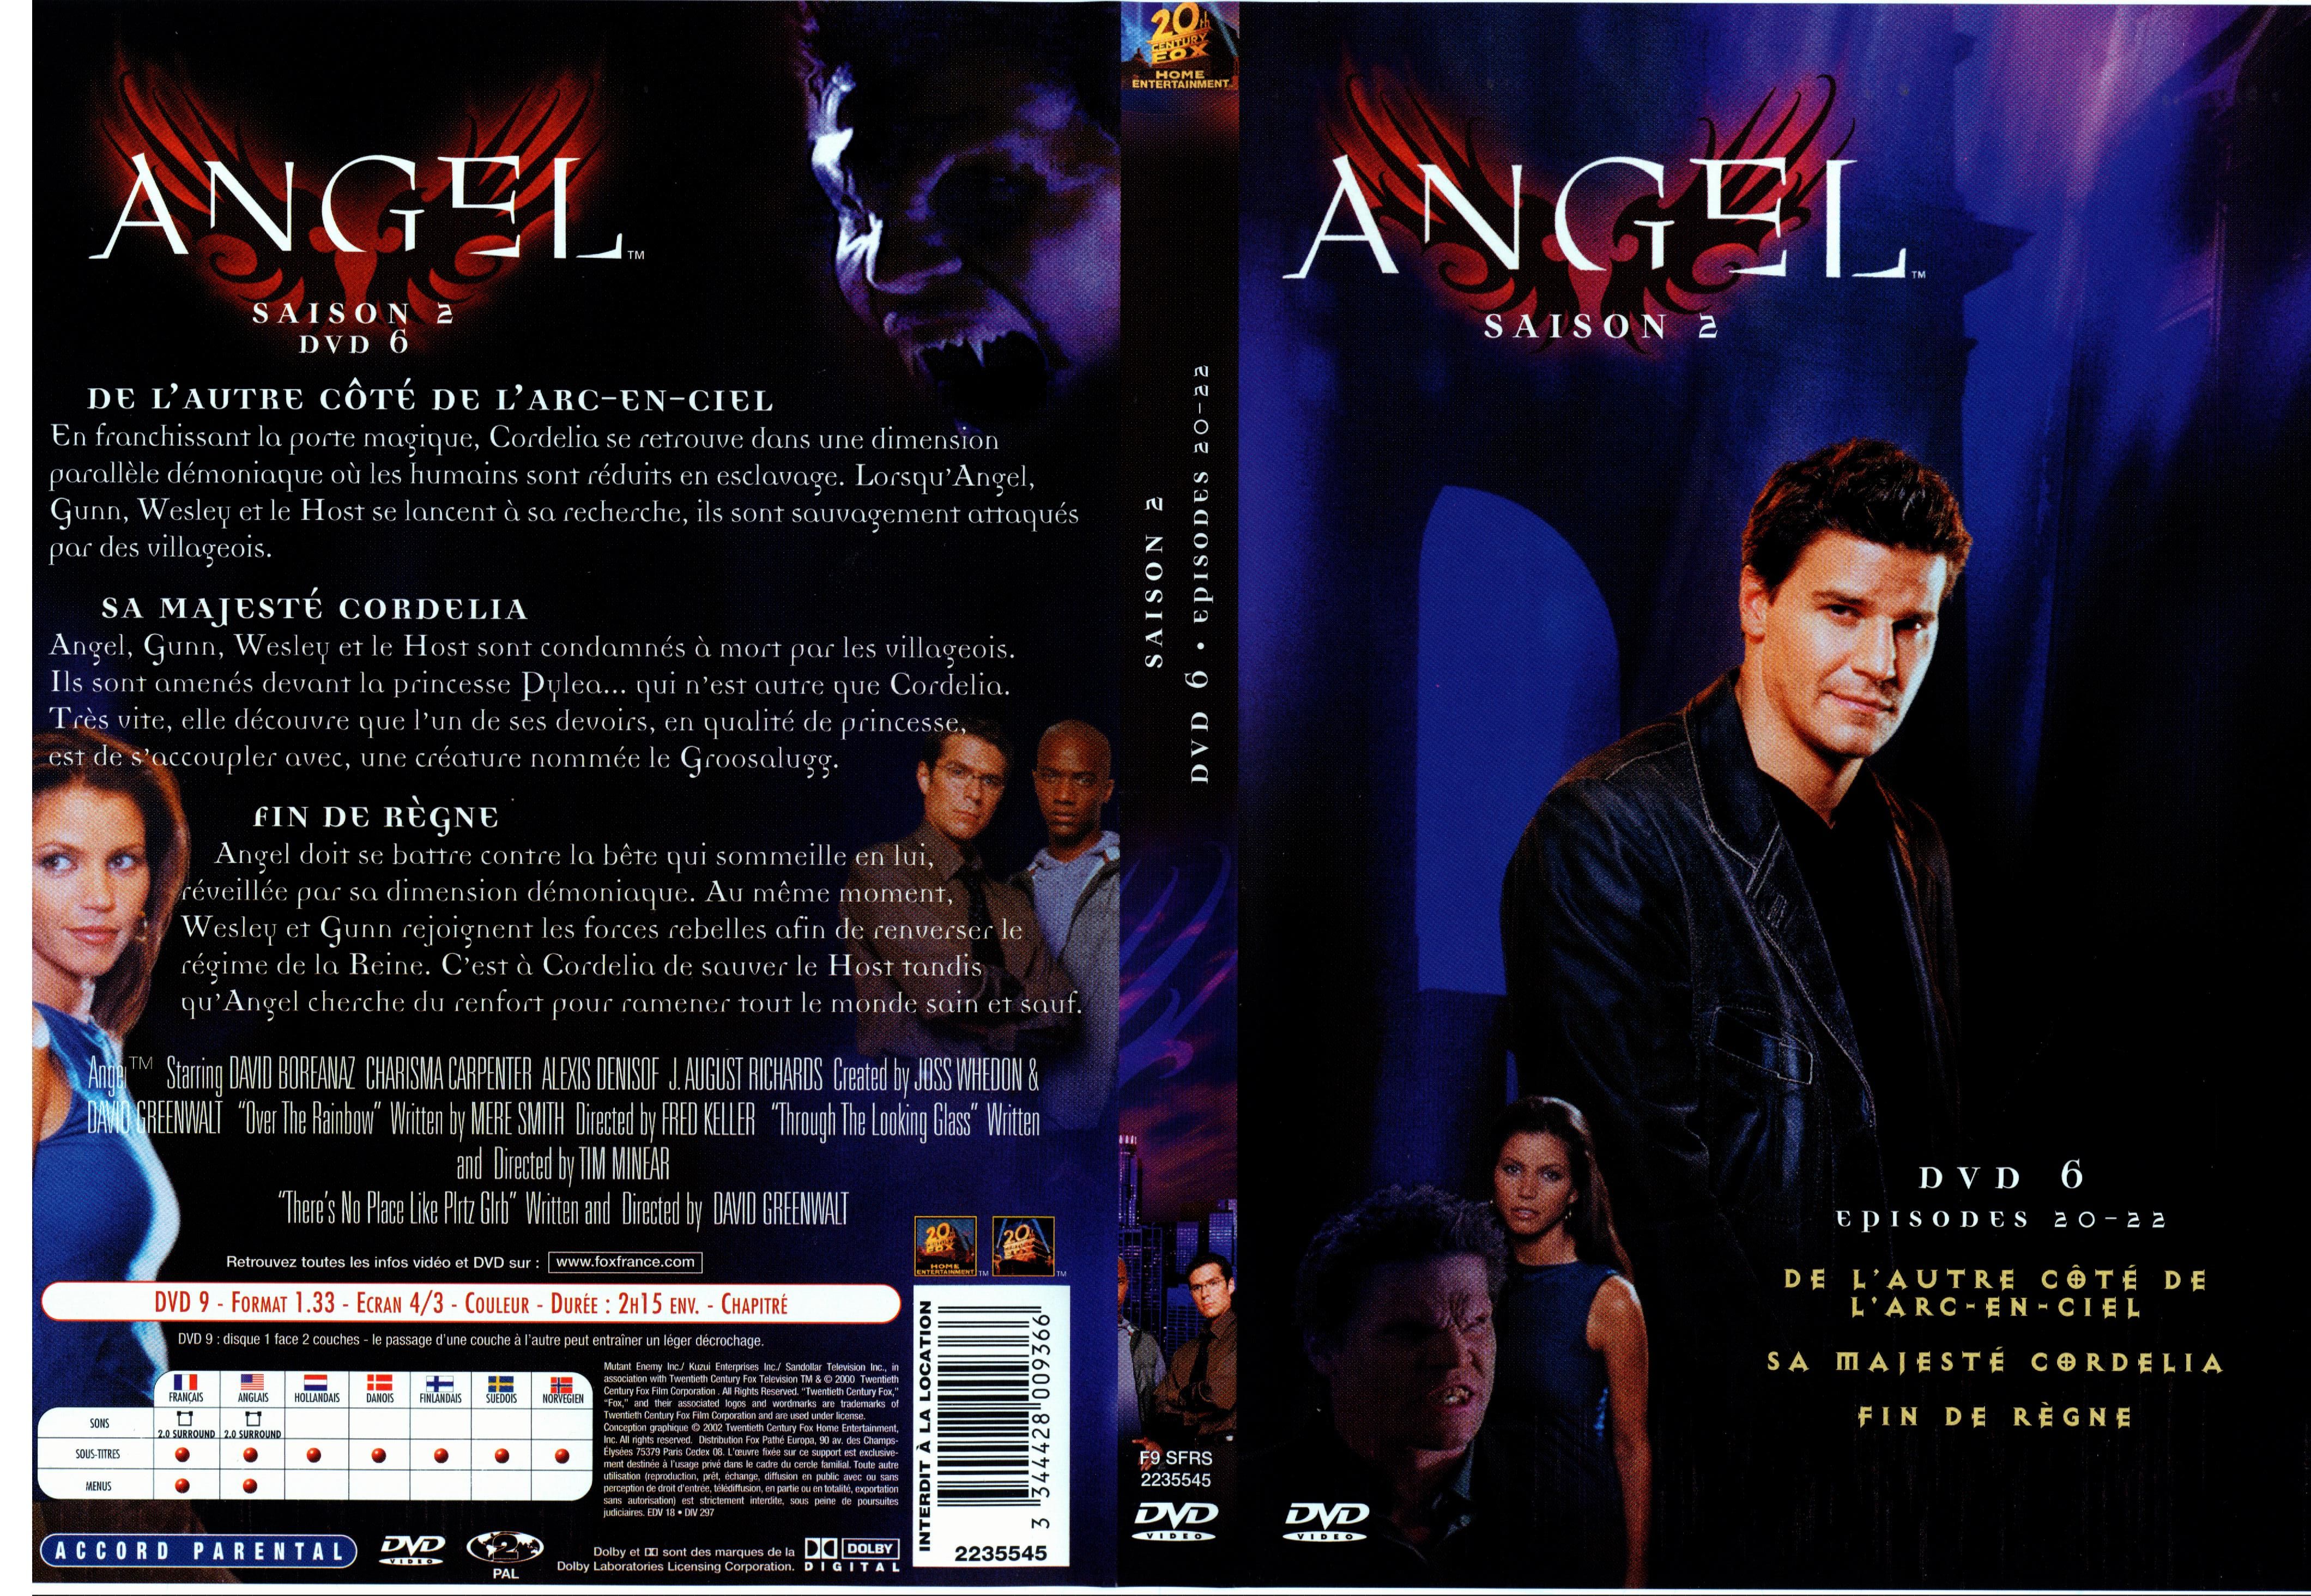 Jaquette DVD Angel Saison 2 dvd 6